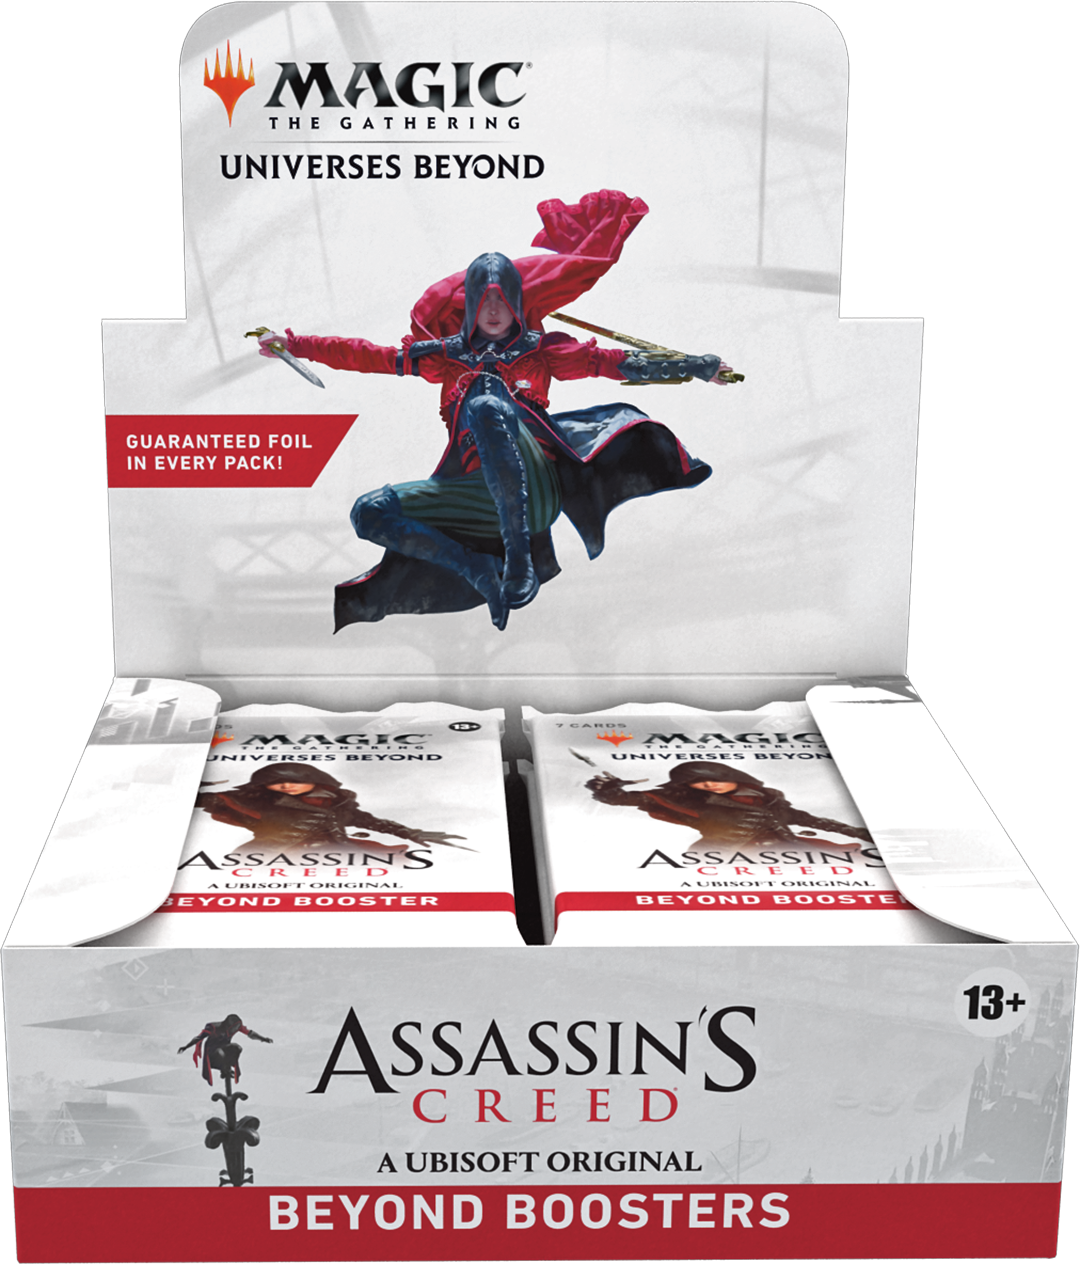 Assassini e maghi: scontro epico in Magic x Assassin’s Creed!